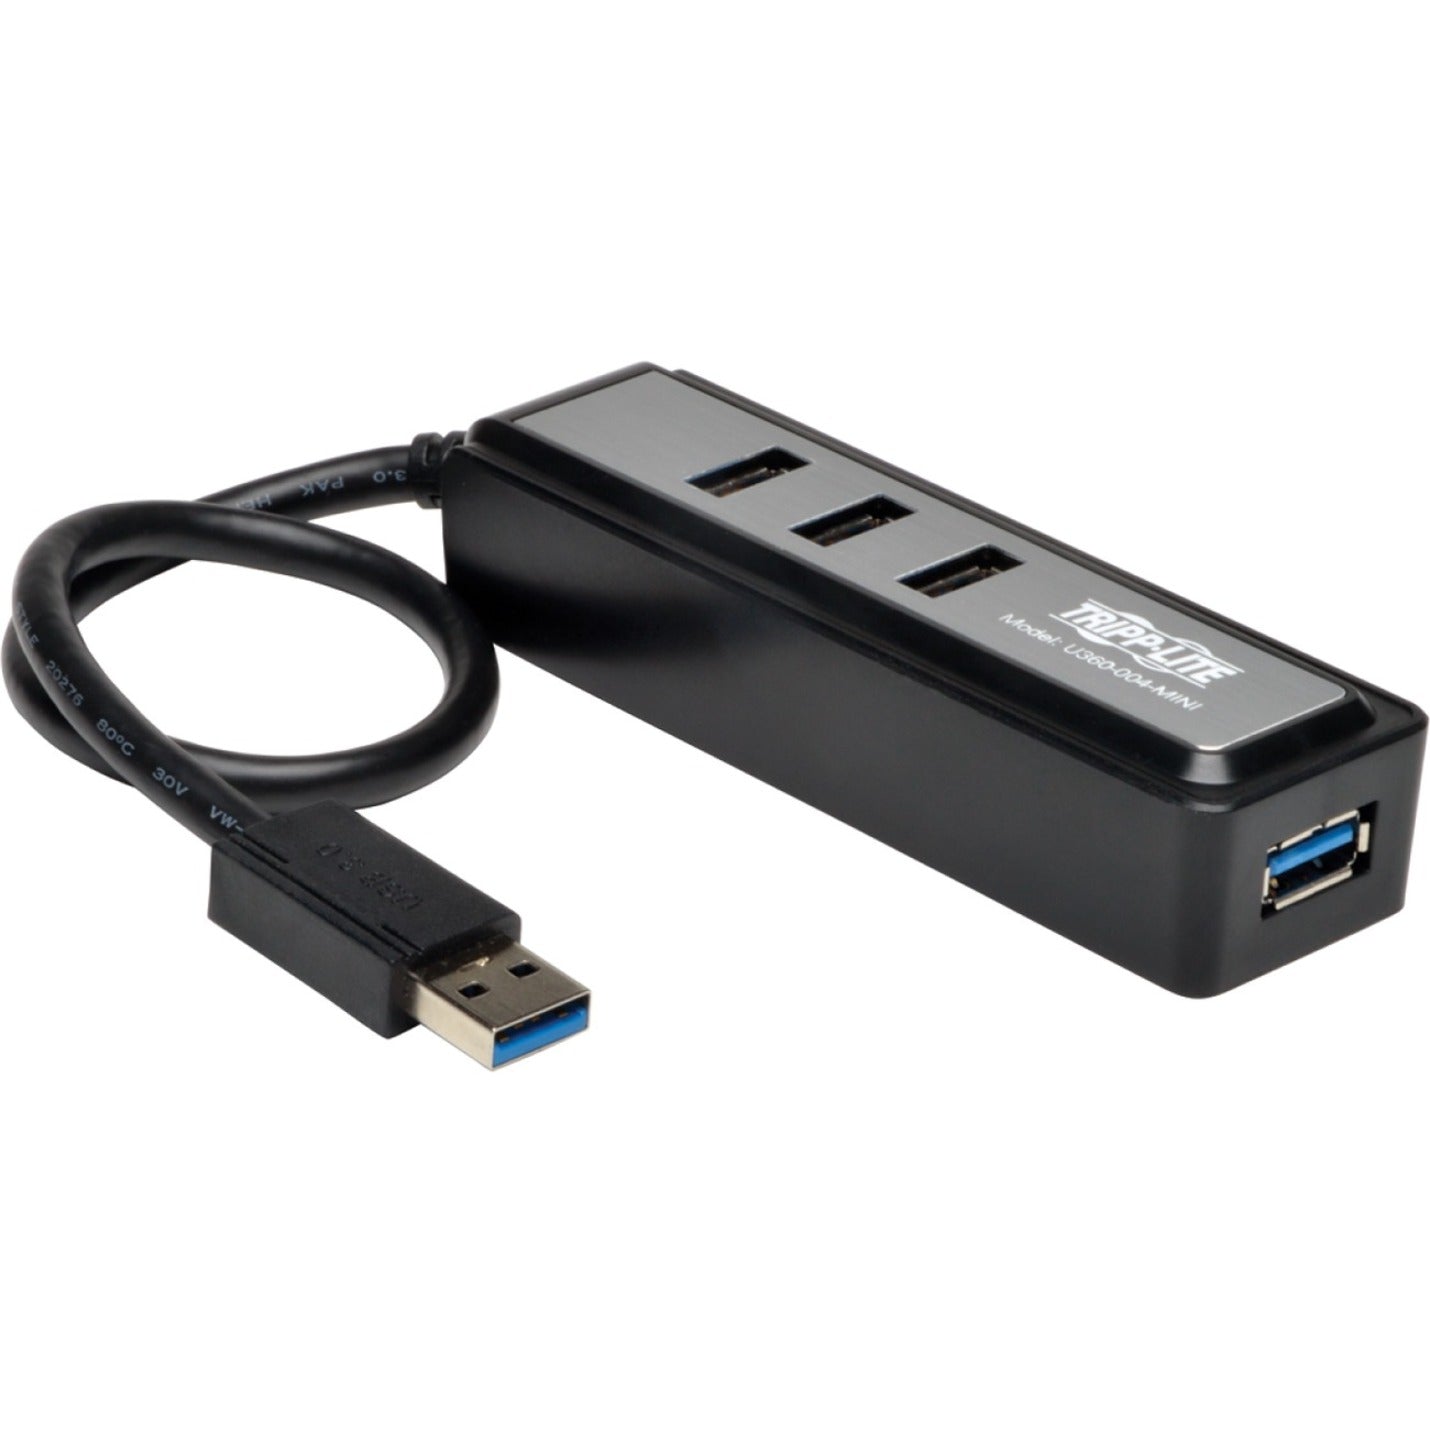 Tripp Lite U360-004-MINI 4-Port Tragbare USB 3.0 SuperSpeed Hub